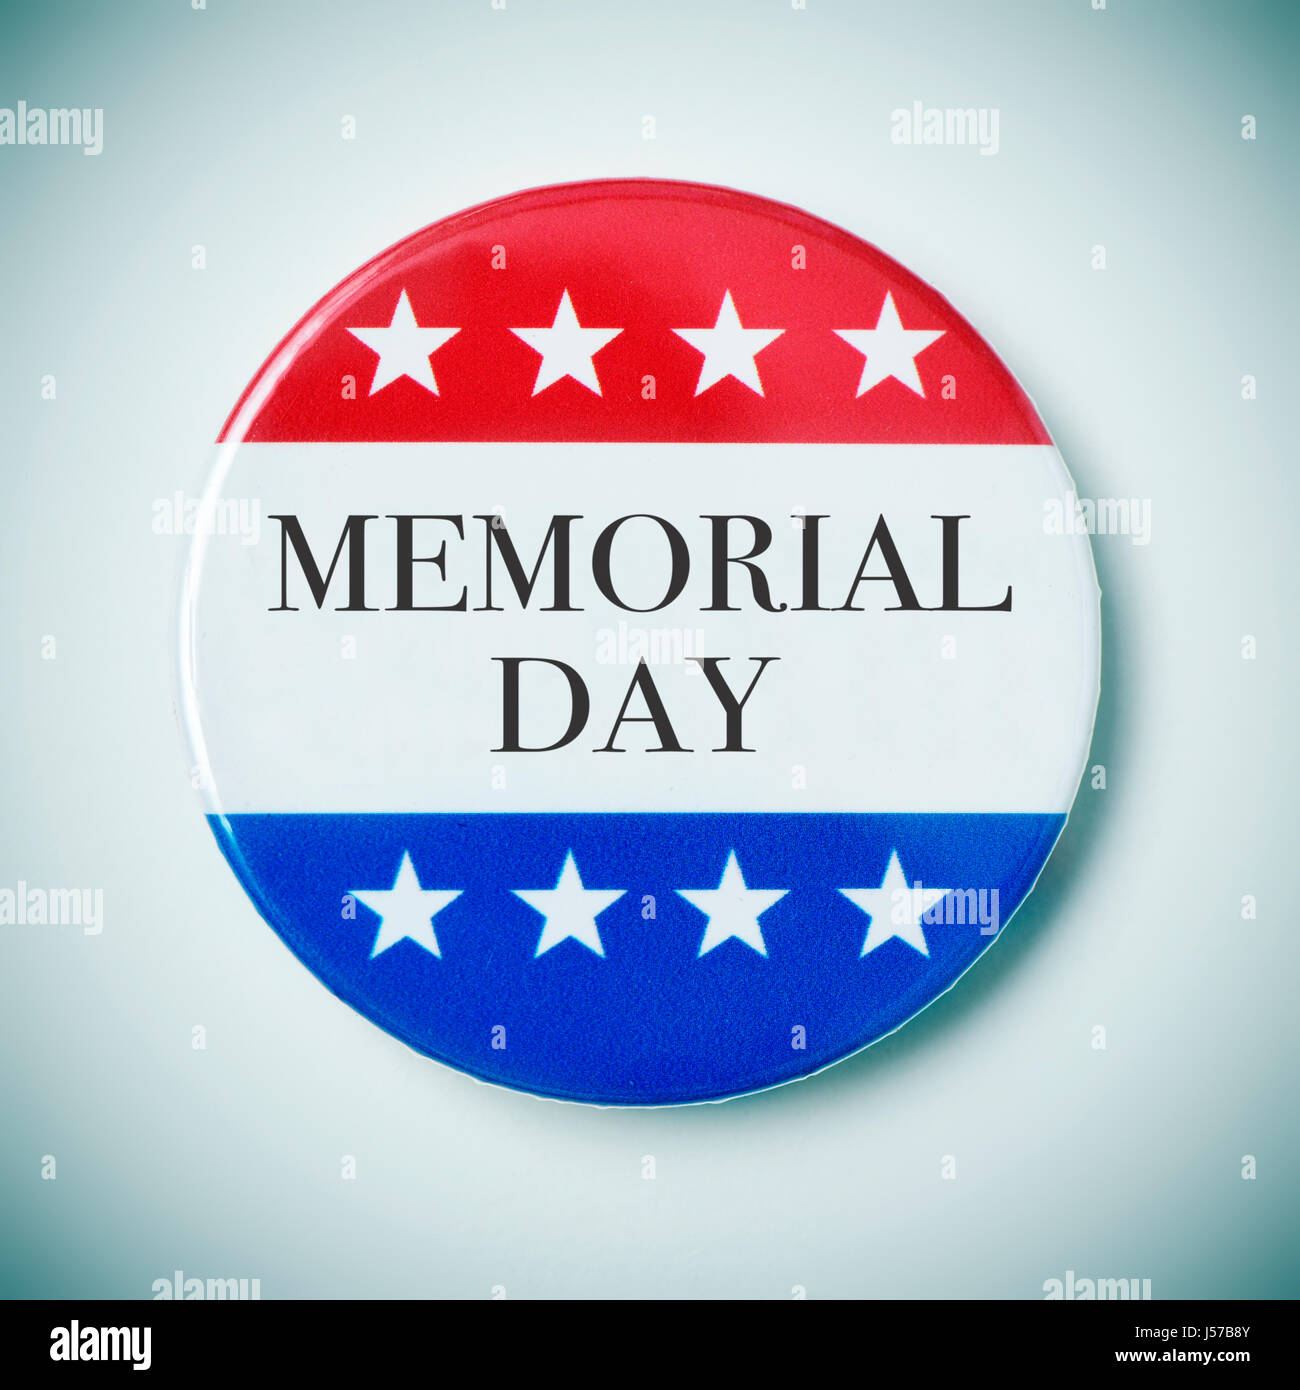 Nahaufnahme einer Pin-Schaltfläche mit dem Text Memorial Day und der Farben und Sterne der Flagge der Vereinigten Staaten, mit einer Vignette hinzugefügt Stockfoto